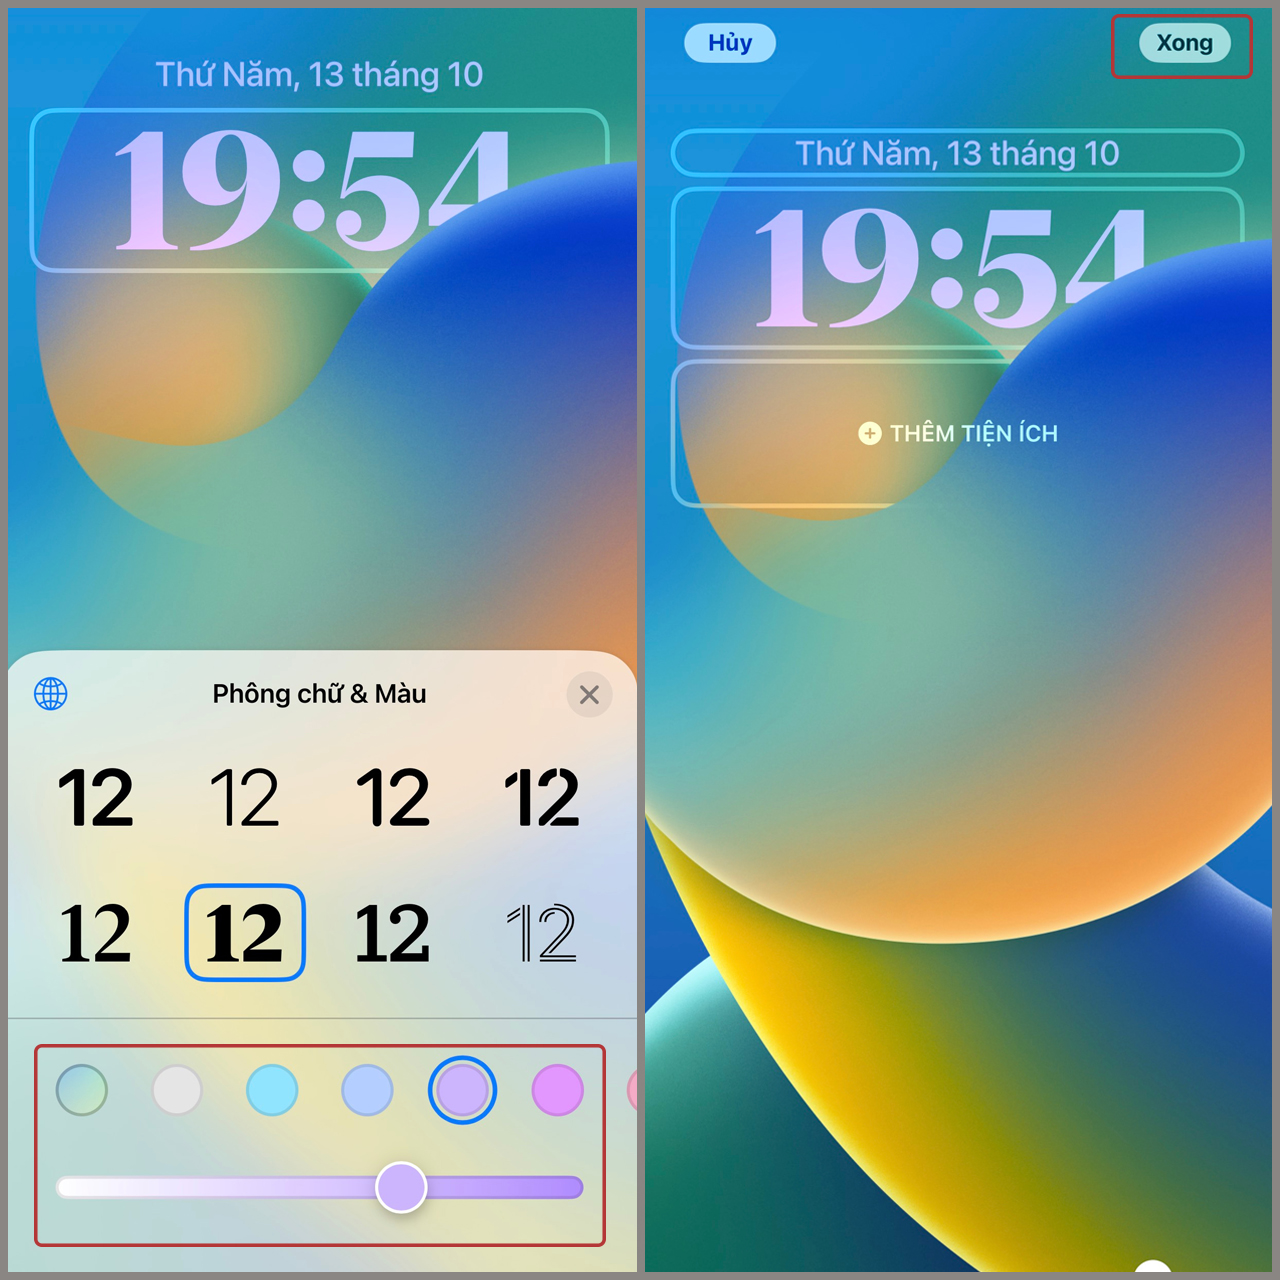 Kiểu đồng hồ trên iOS nay đã có những cập nhật mới để tô điểm thêm sự sinh động cho điện thoại của bạn. Những mẫu đồng hồ đa dạng và độc đáo sẽ giúp màn hình khóa của bạn trở nên thú vị hơn, đồng thời tạo ra ấn tượng đầu tiên tuyệt vời cho những ai đã xem điện thoại của bạn.